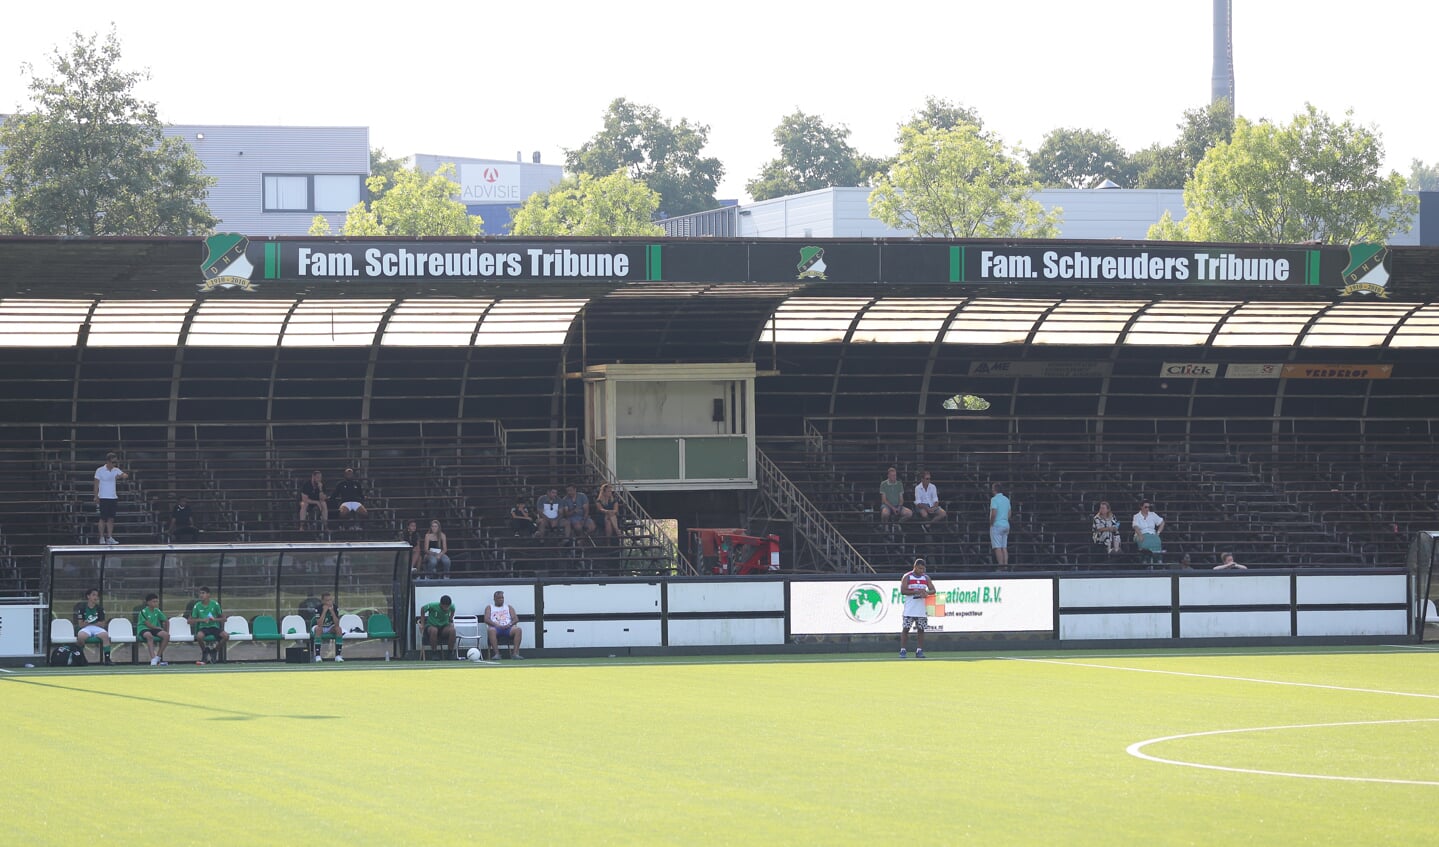 De tribune die naar de familie Schreuders is vernoemd (Foto: Aad van der Knaap) 